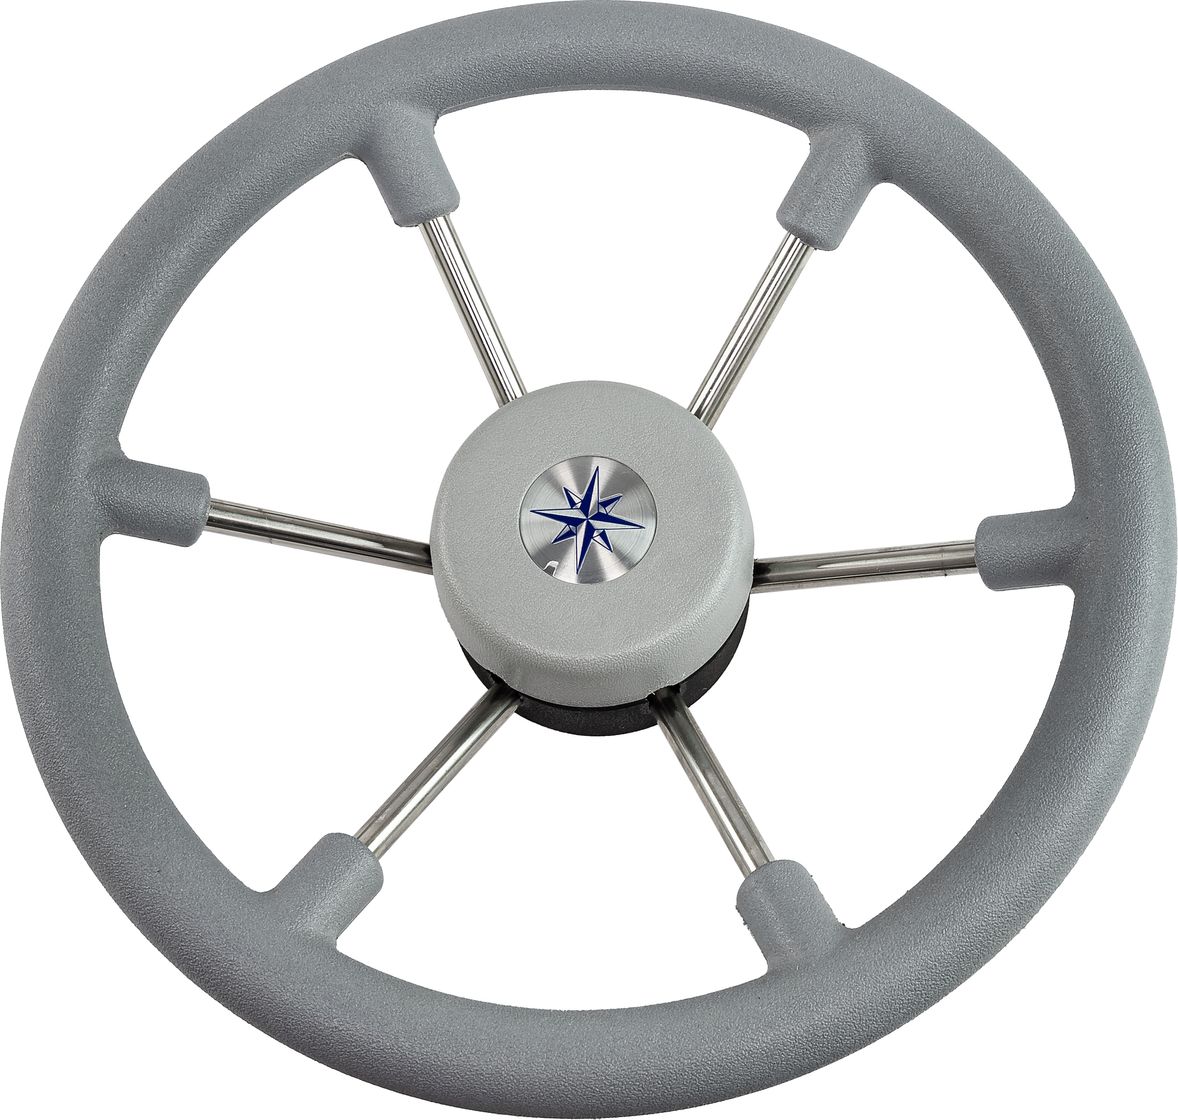 Рулевое колесо LEADER TANEGUM серый обод серебряные спицы д. 330 мм VN7330-03 заглушка декоративная для рулевых колес leader tanegum черная vn00010 01